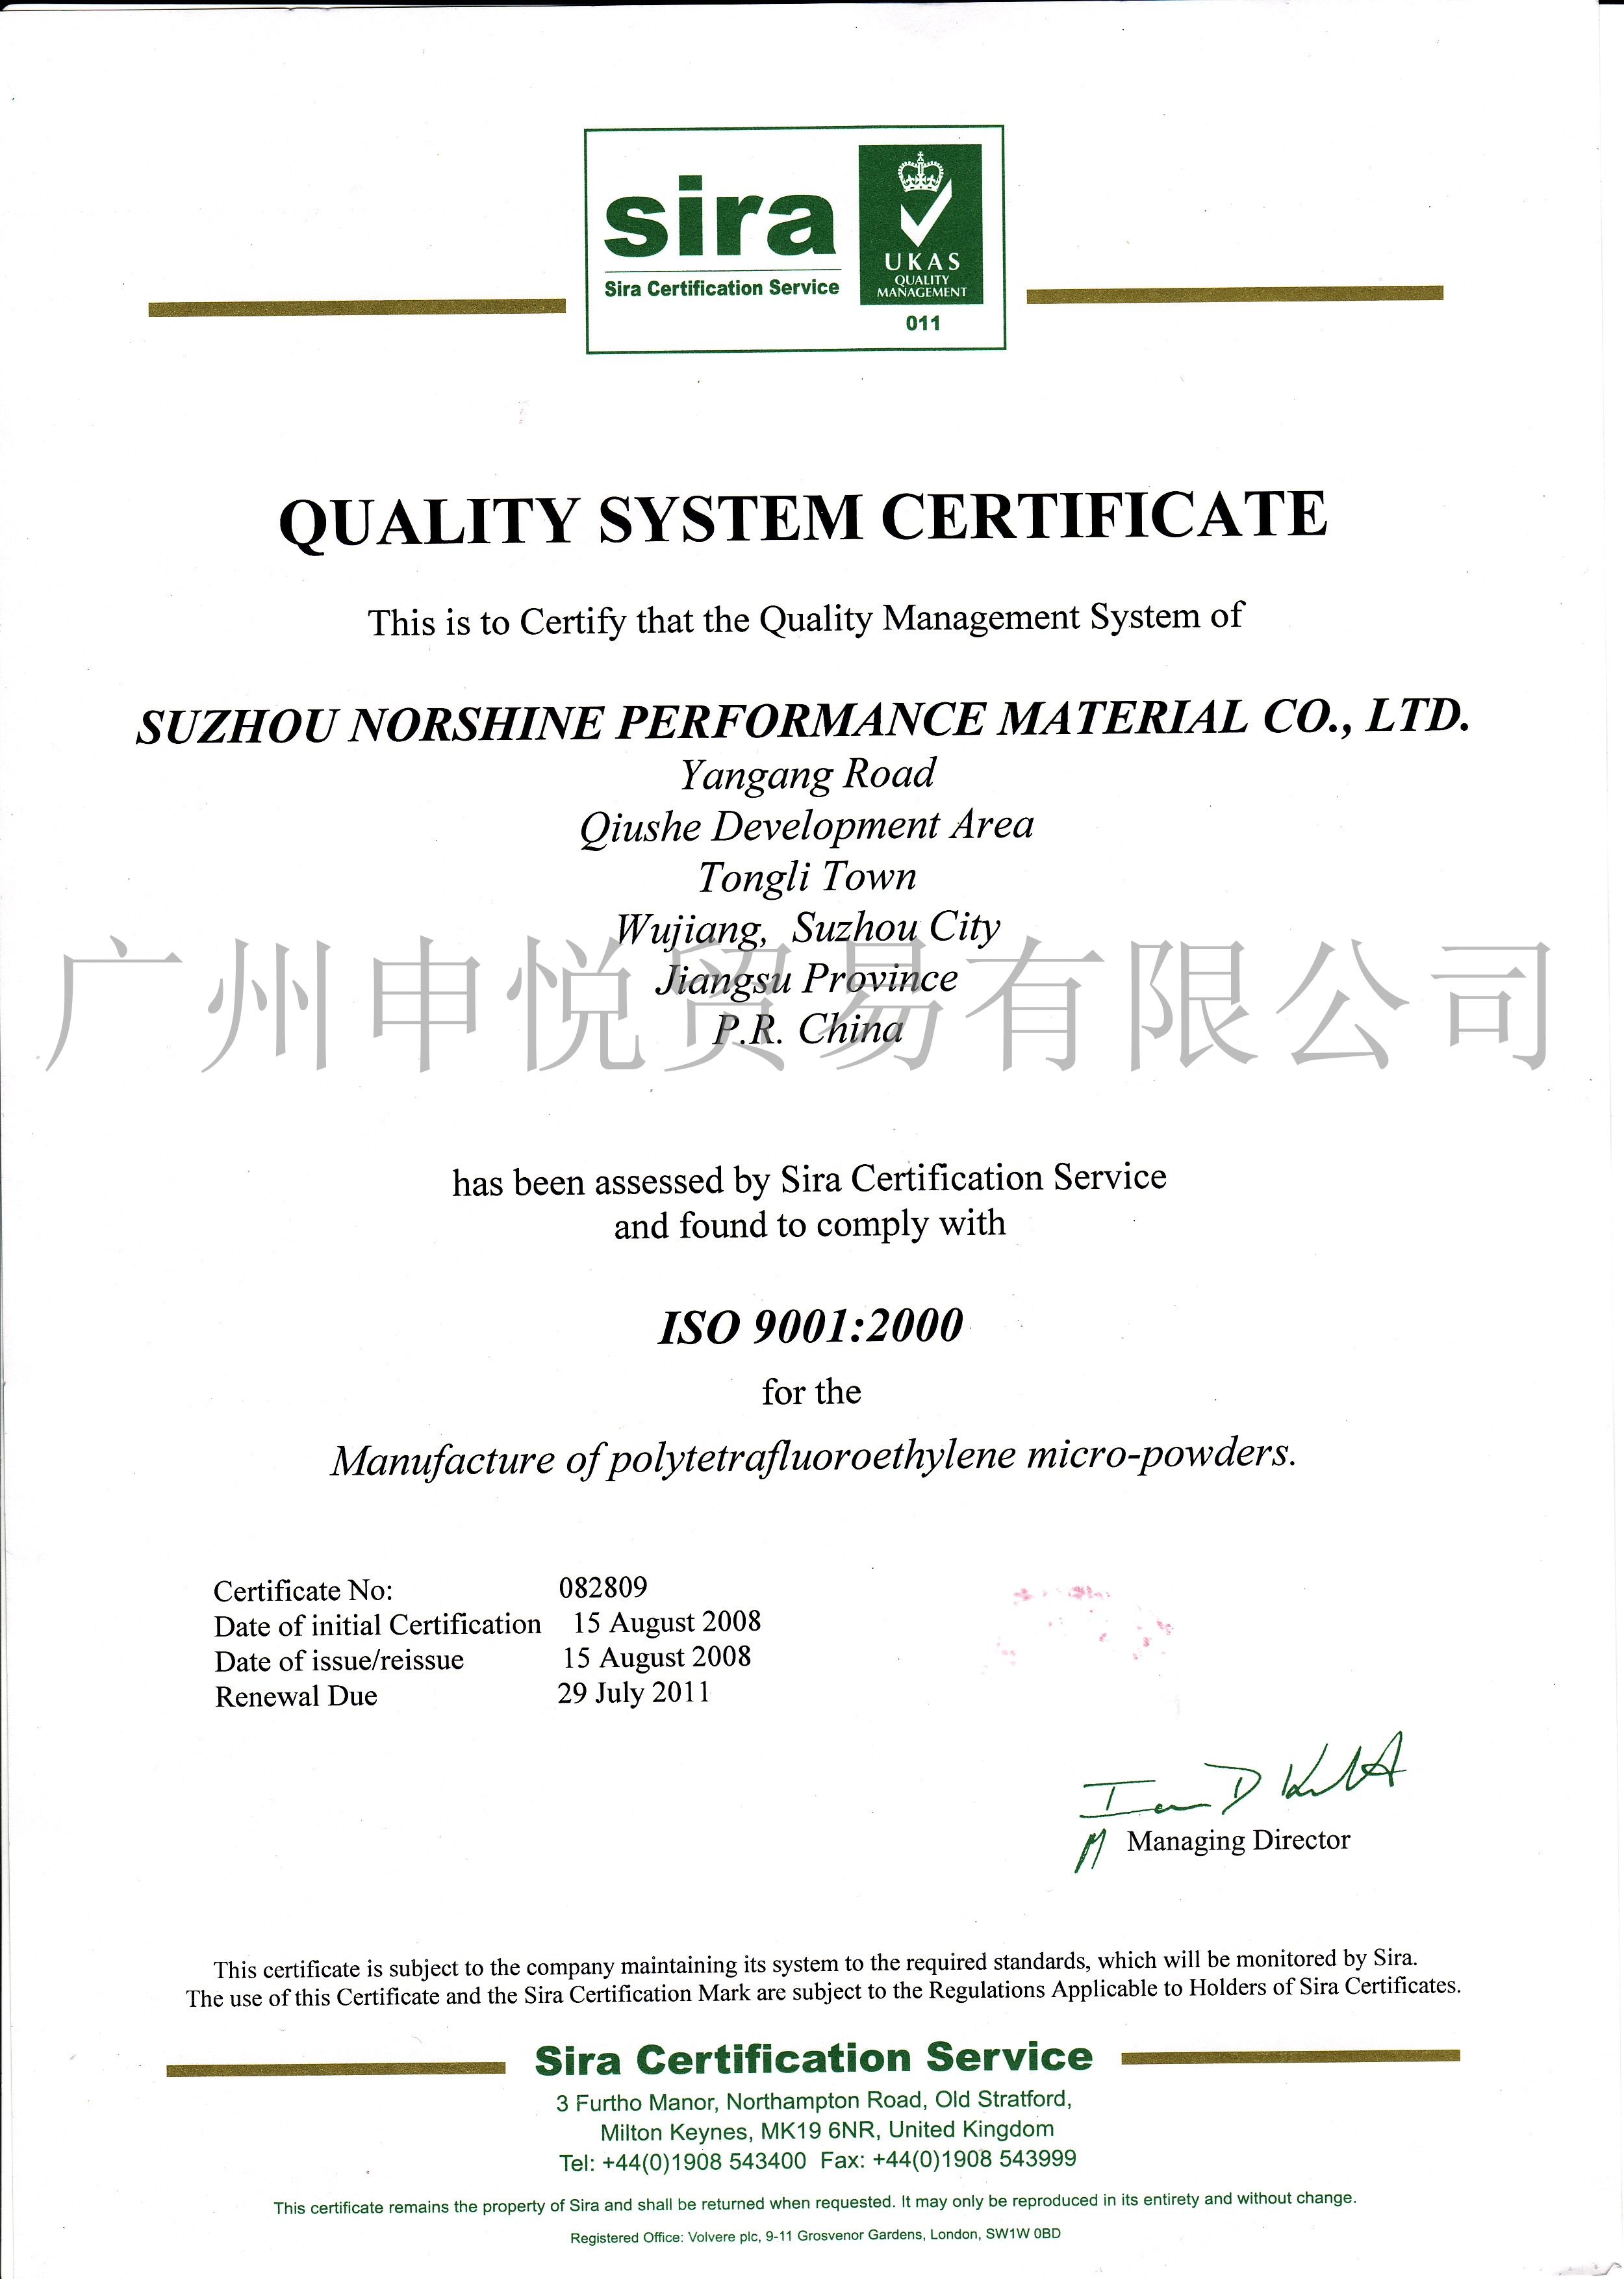 苏州诺升系列产品质量安全证书